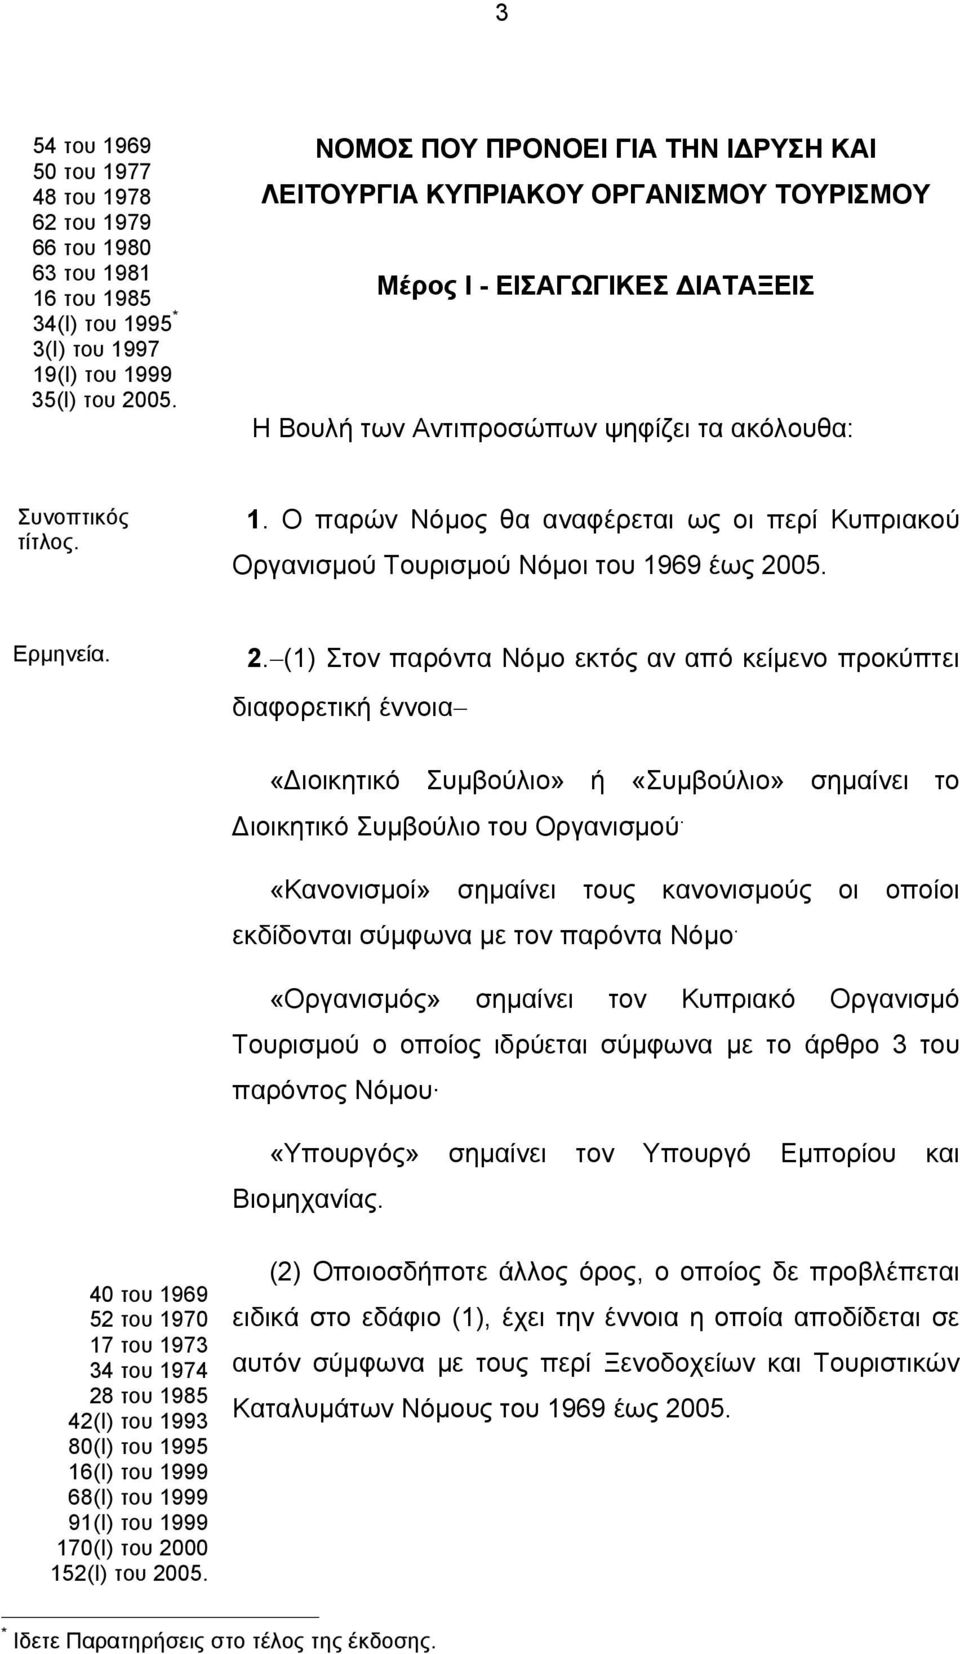 Ο παρών Νόμος θα αναφέρεται ως οι περί Κυπριακού Οργανισμού Τουρισμού Νόμοι του 1969 έως 20